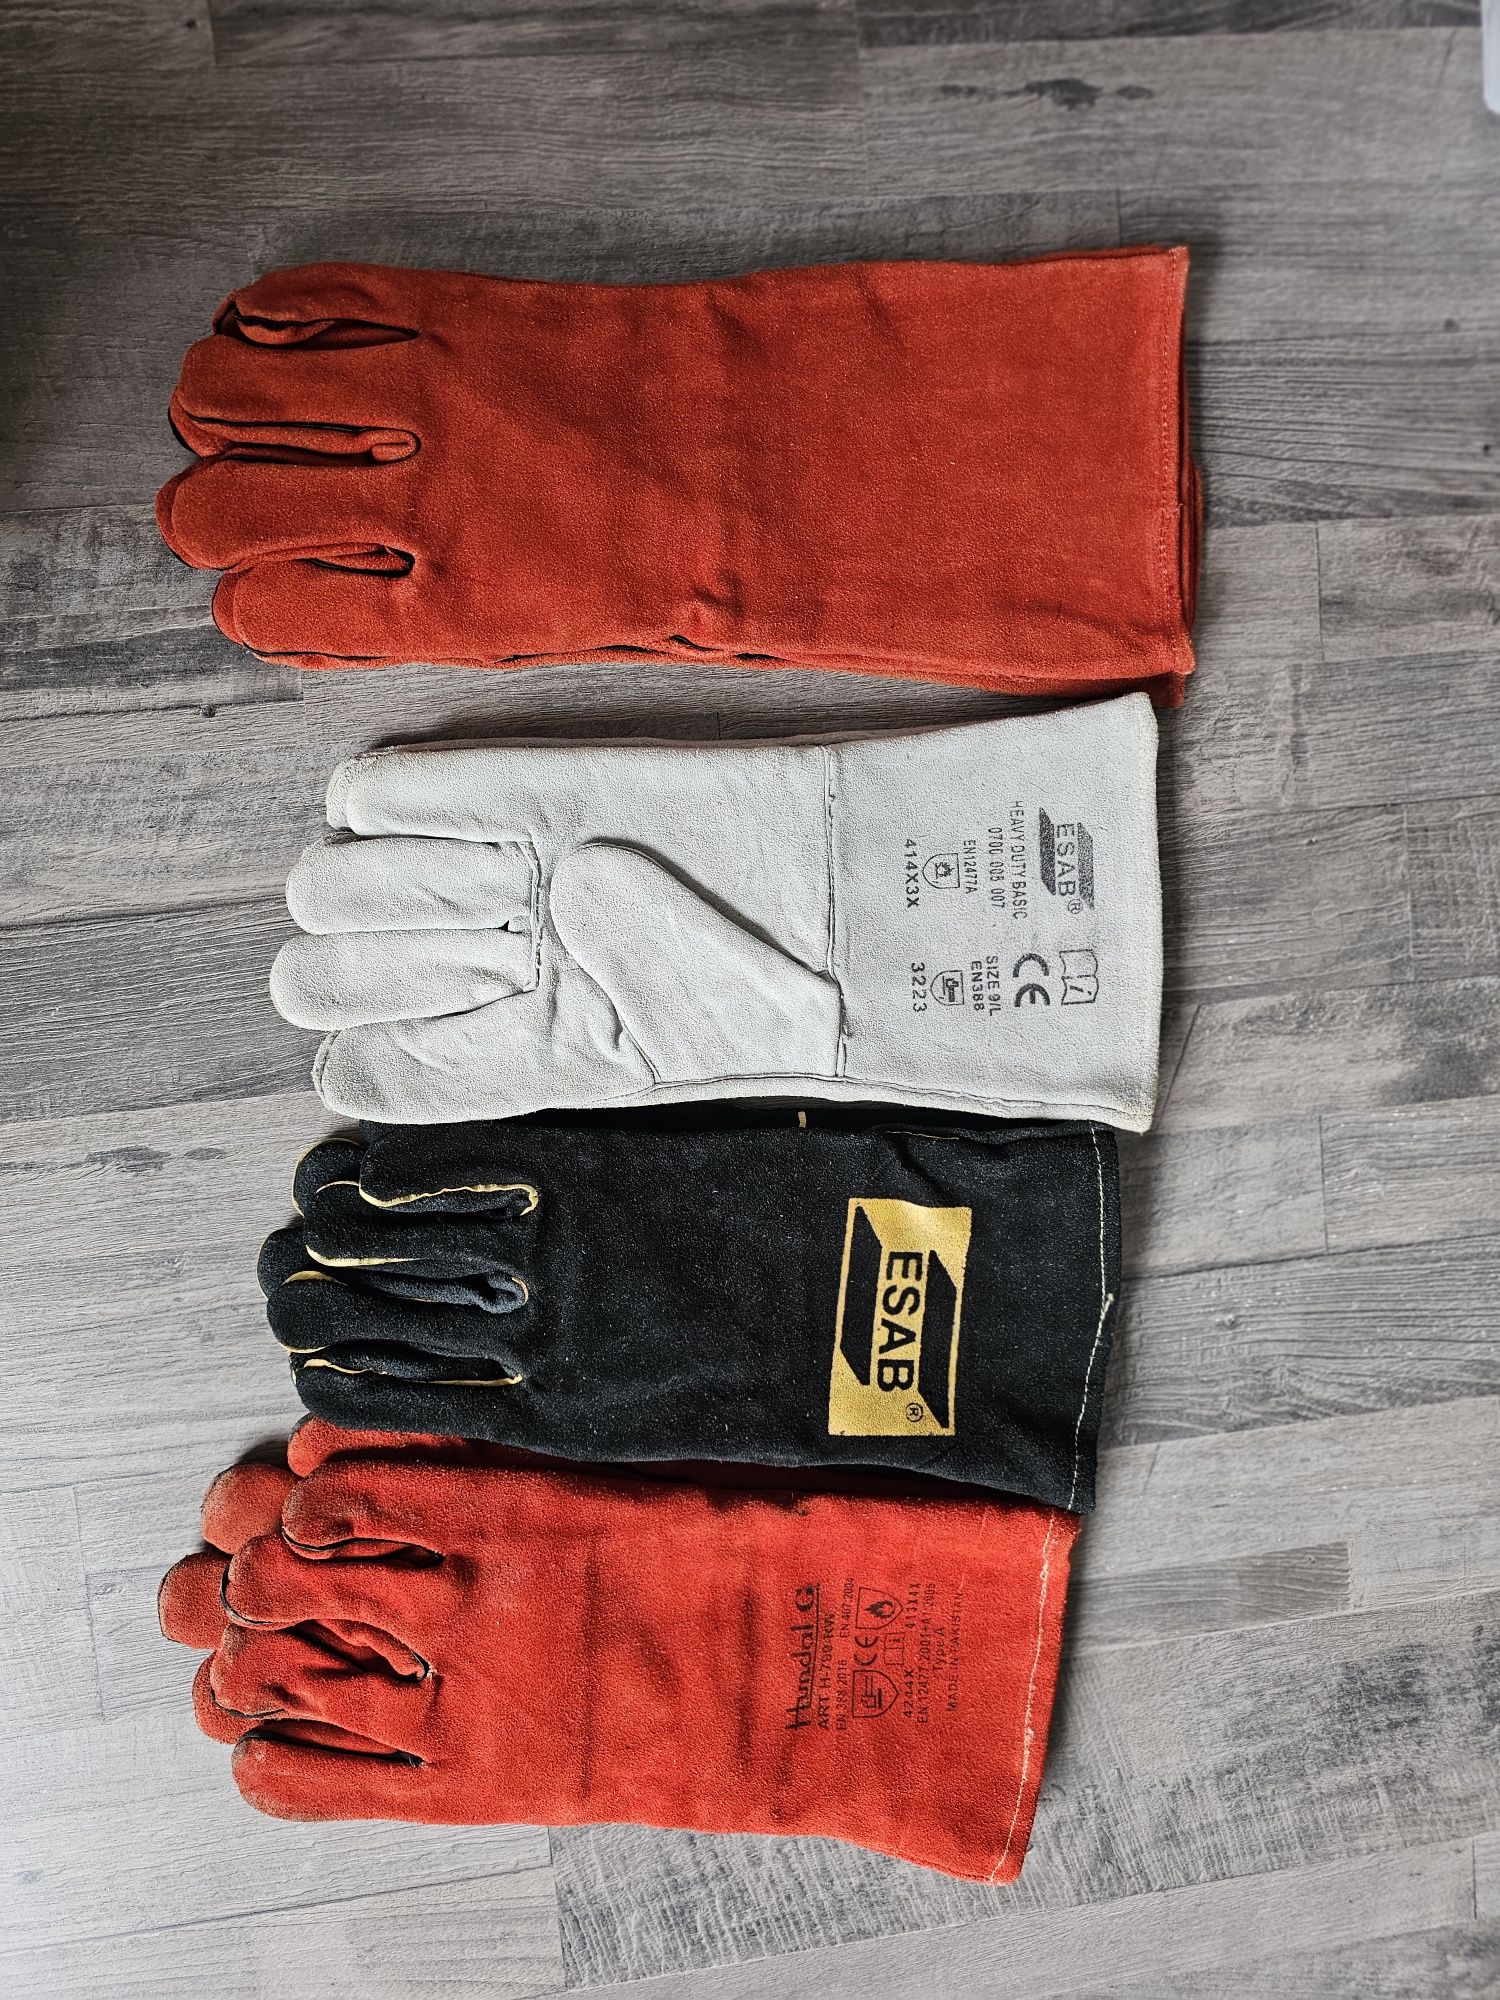 Продаются новые аргонные перчатки ESAB. Цена 1500  тенге за пару